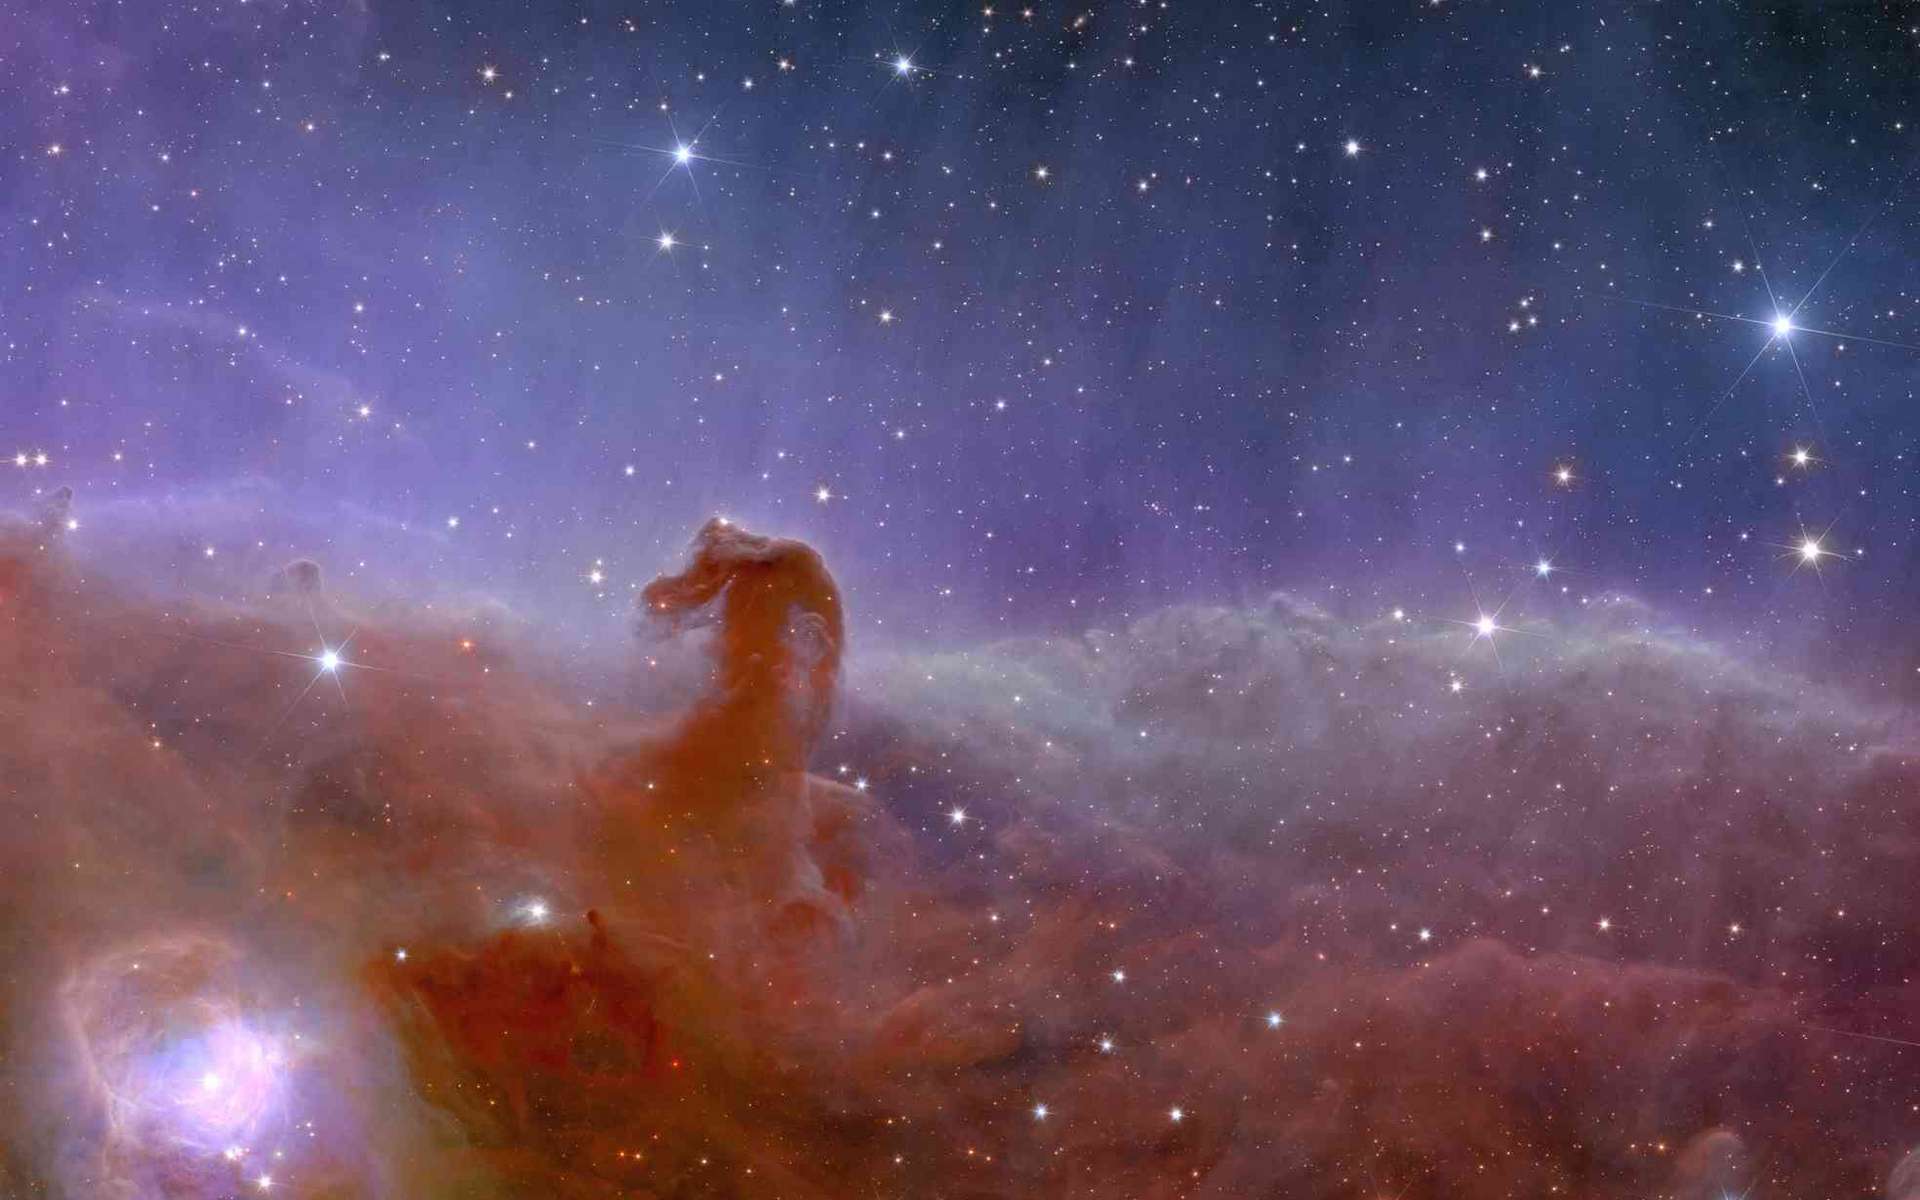 Le télescope James-Webb révèle des détails sans précédent de l'obscure nébuleuse de la Tête de Cheval